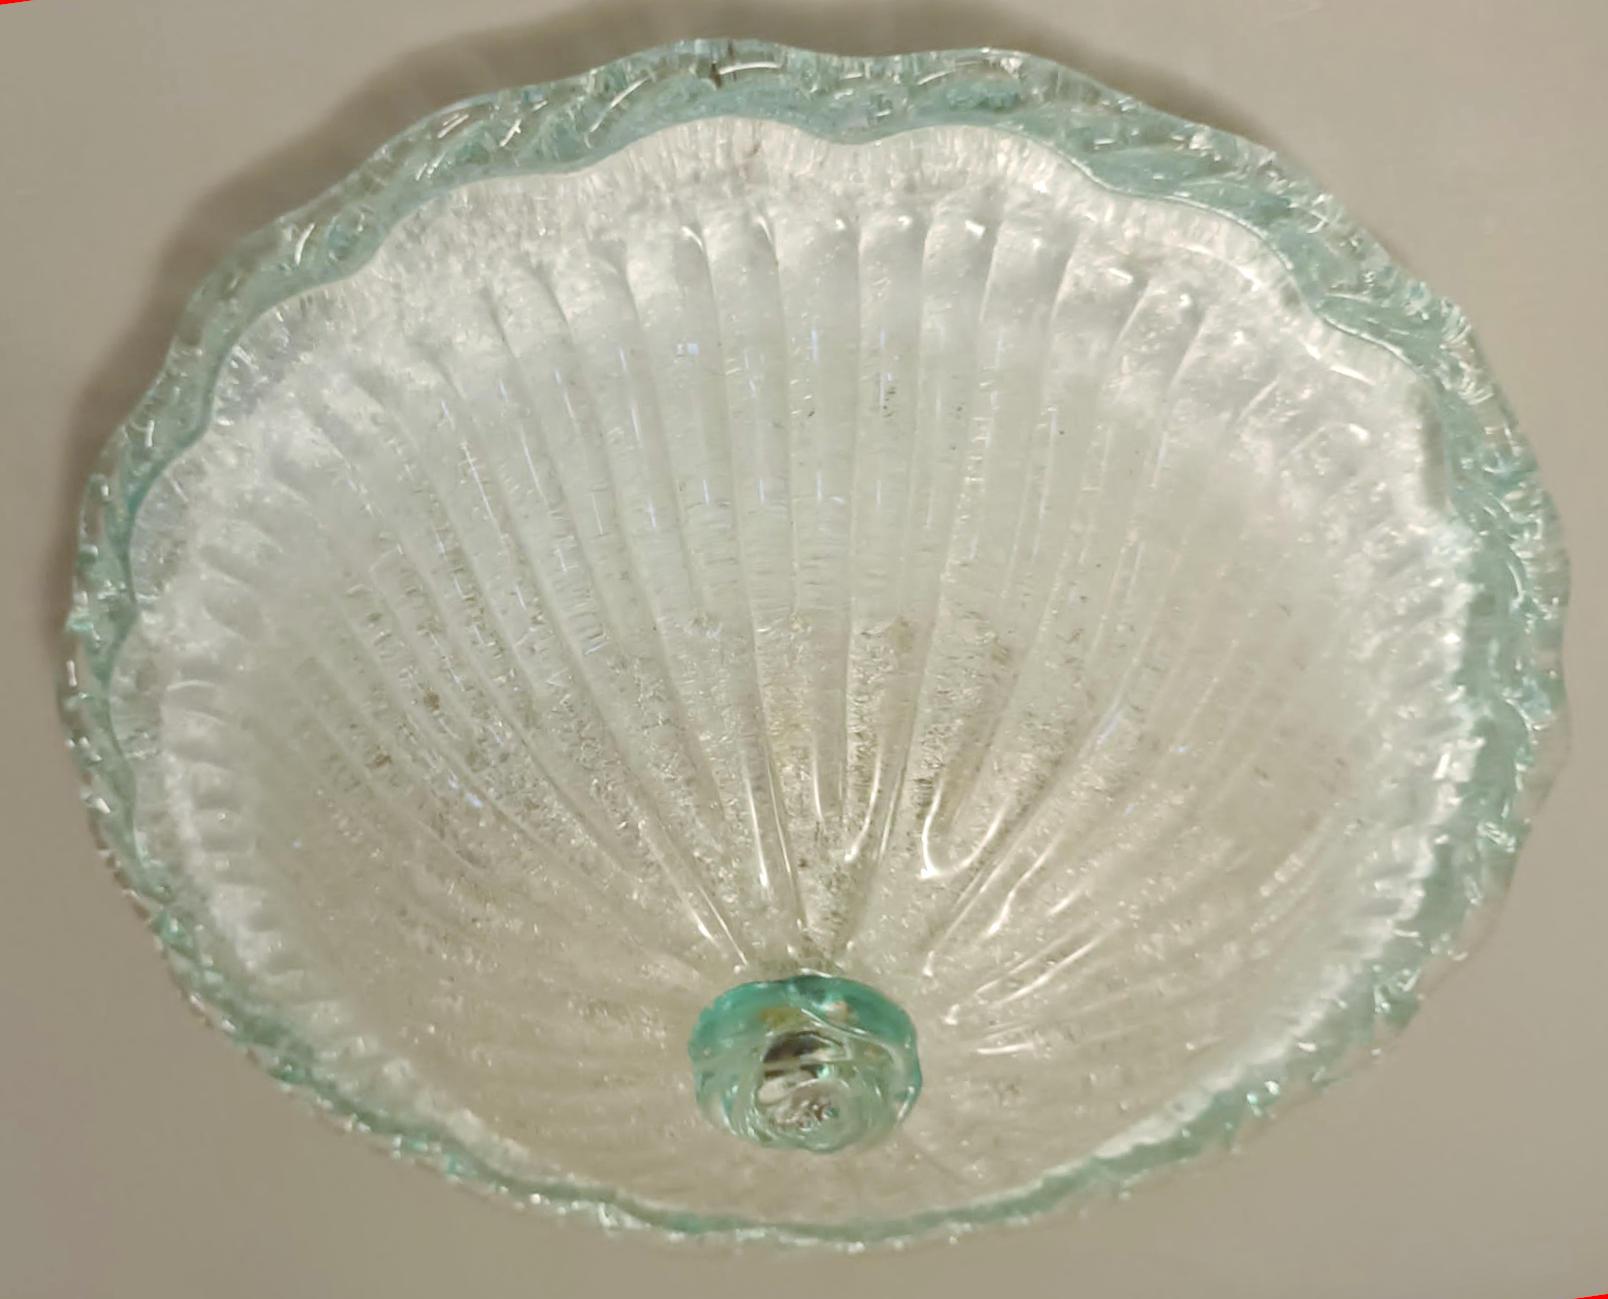 Vintage Italian flush mount mit einem einzelnen gerippten Murano Glasschirm mundgeblasen mit körniger Textur unter Verwendung der Graniglia Technik, verziert mit grünem Glasrand und Endstück / Made in Italy circa 1960s
Maße: Durchmesser 16 Zoll,